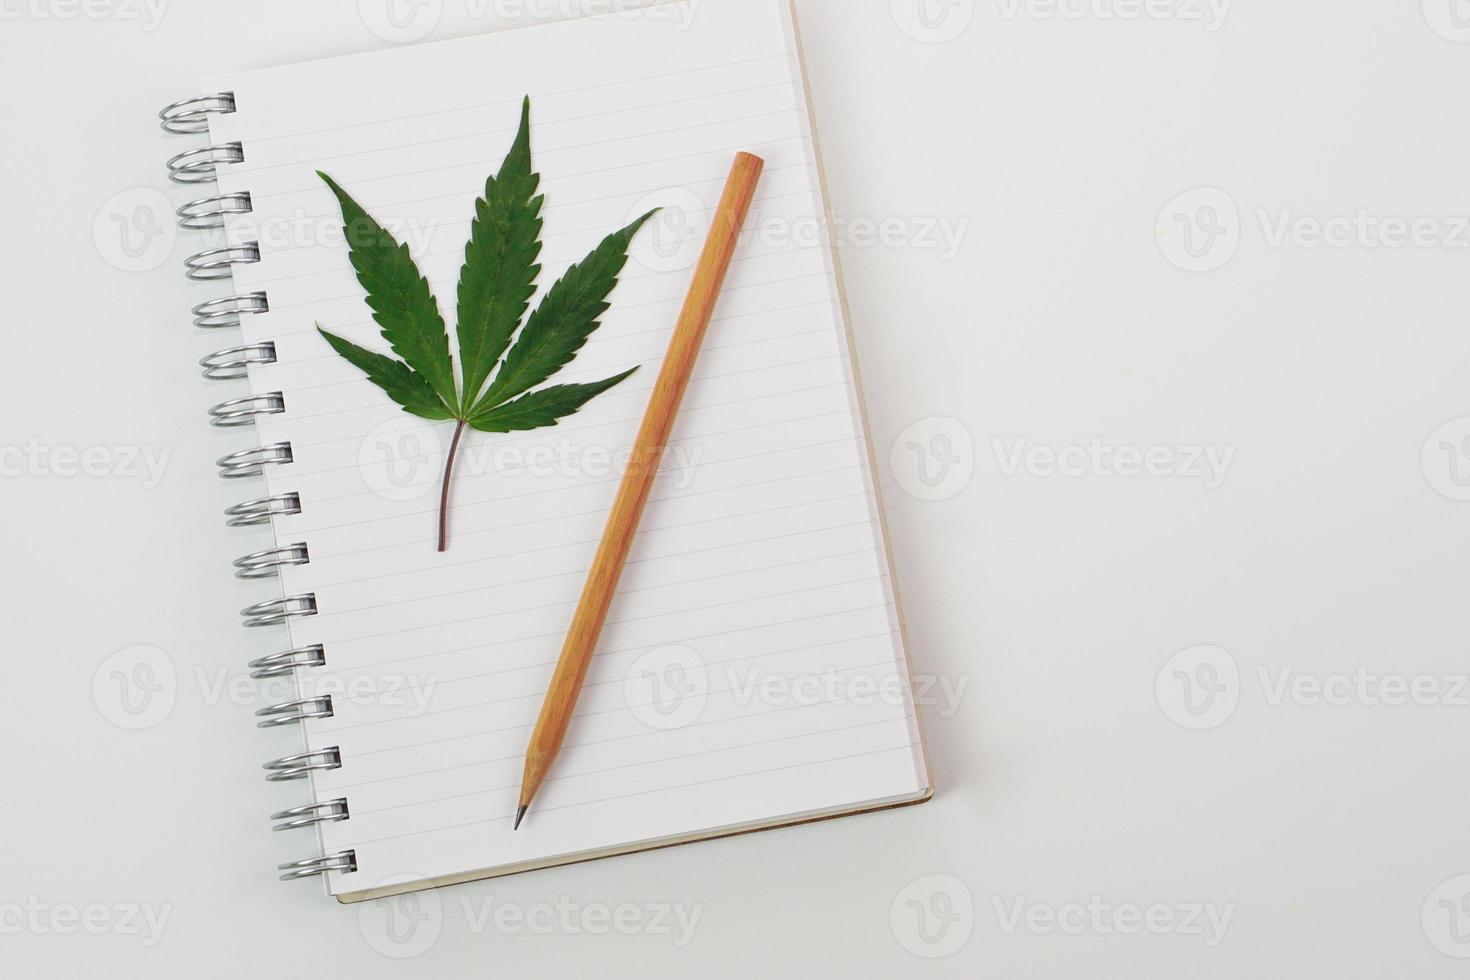 vista superior de la hoja de cannabis fresca o de la hoja de marihuana colocada en un libro y un lápiz. concepto de investigación, hierbas y medicina. foto